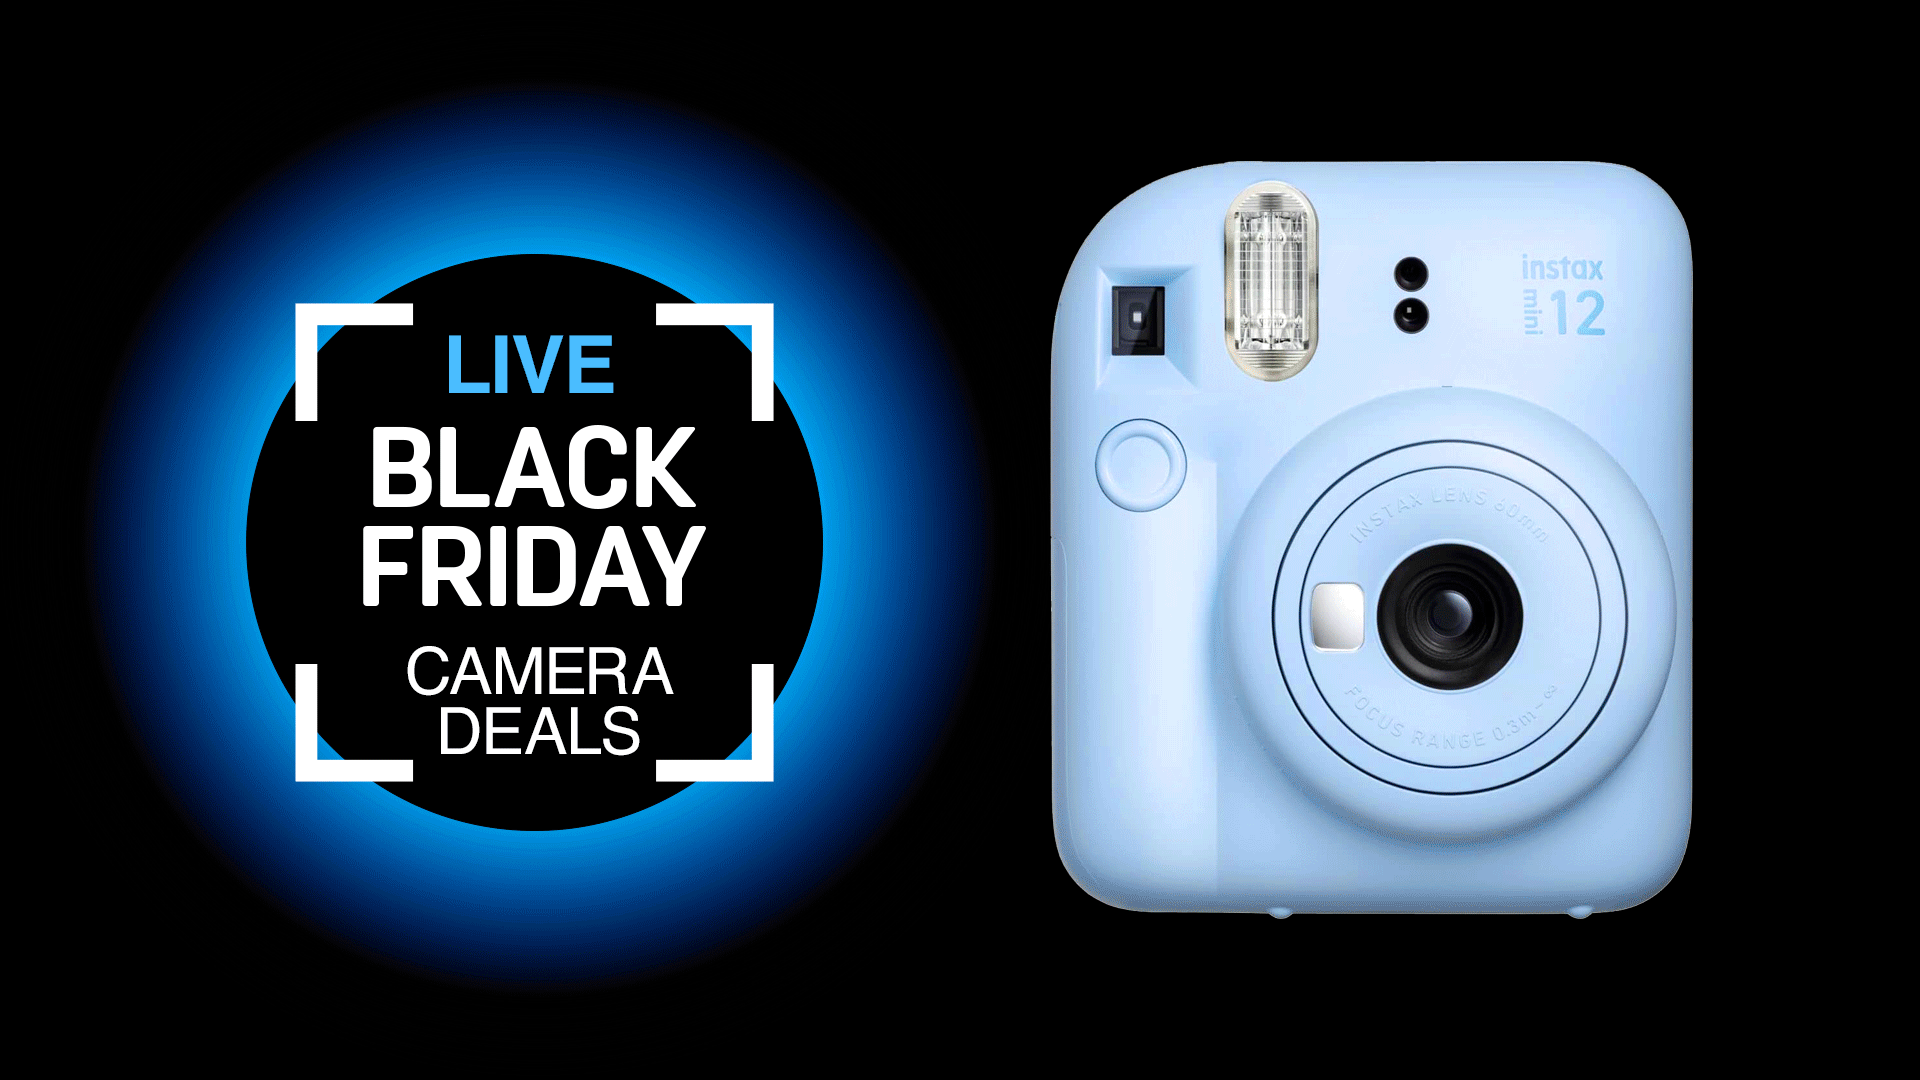 Black Friday LIVE camera deals